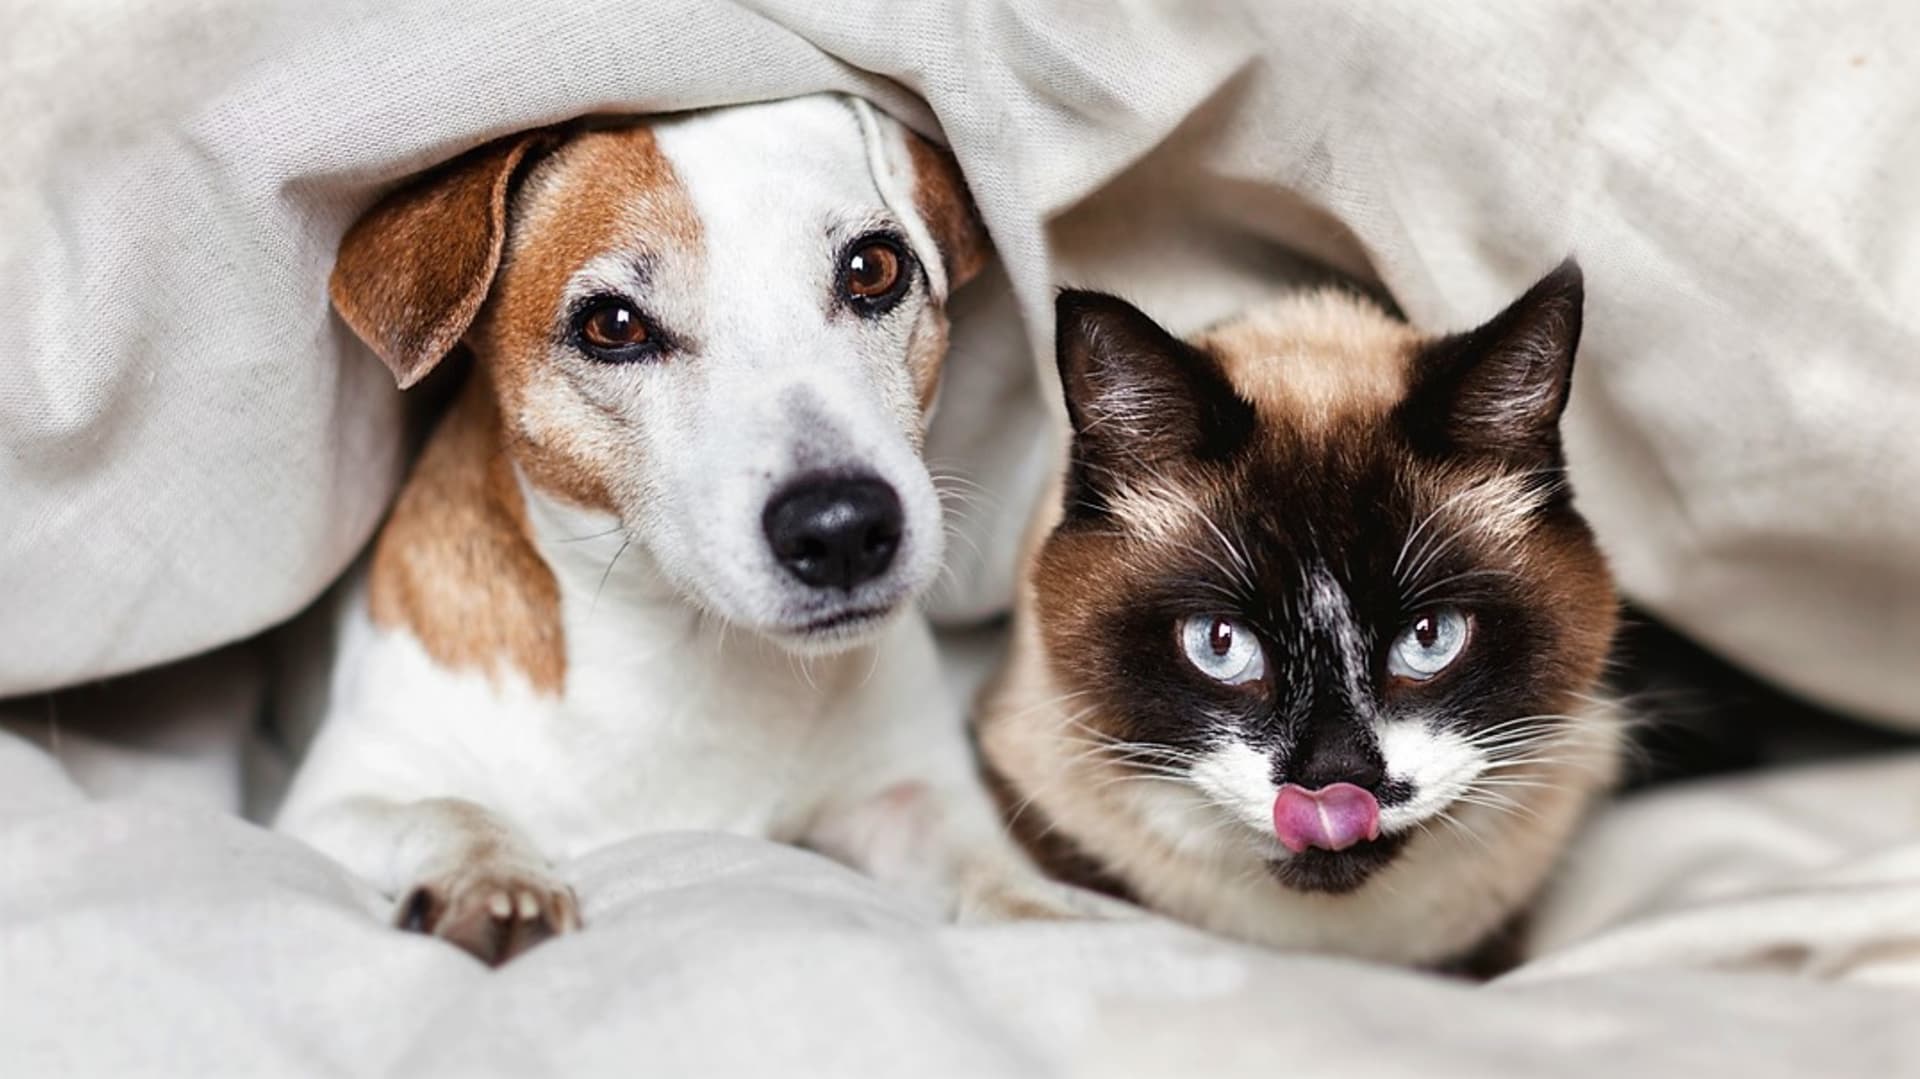 Cibule ani česnek  psům a kočkám posílit imunitu nepomohou, naopak jim můžou ublížit